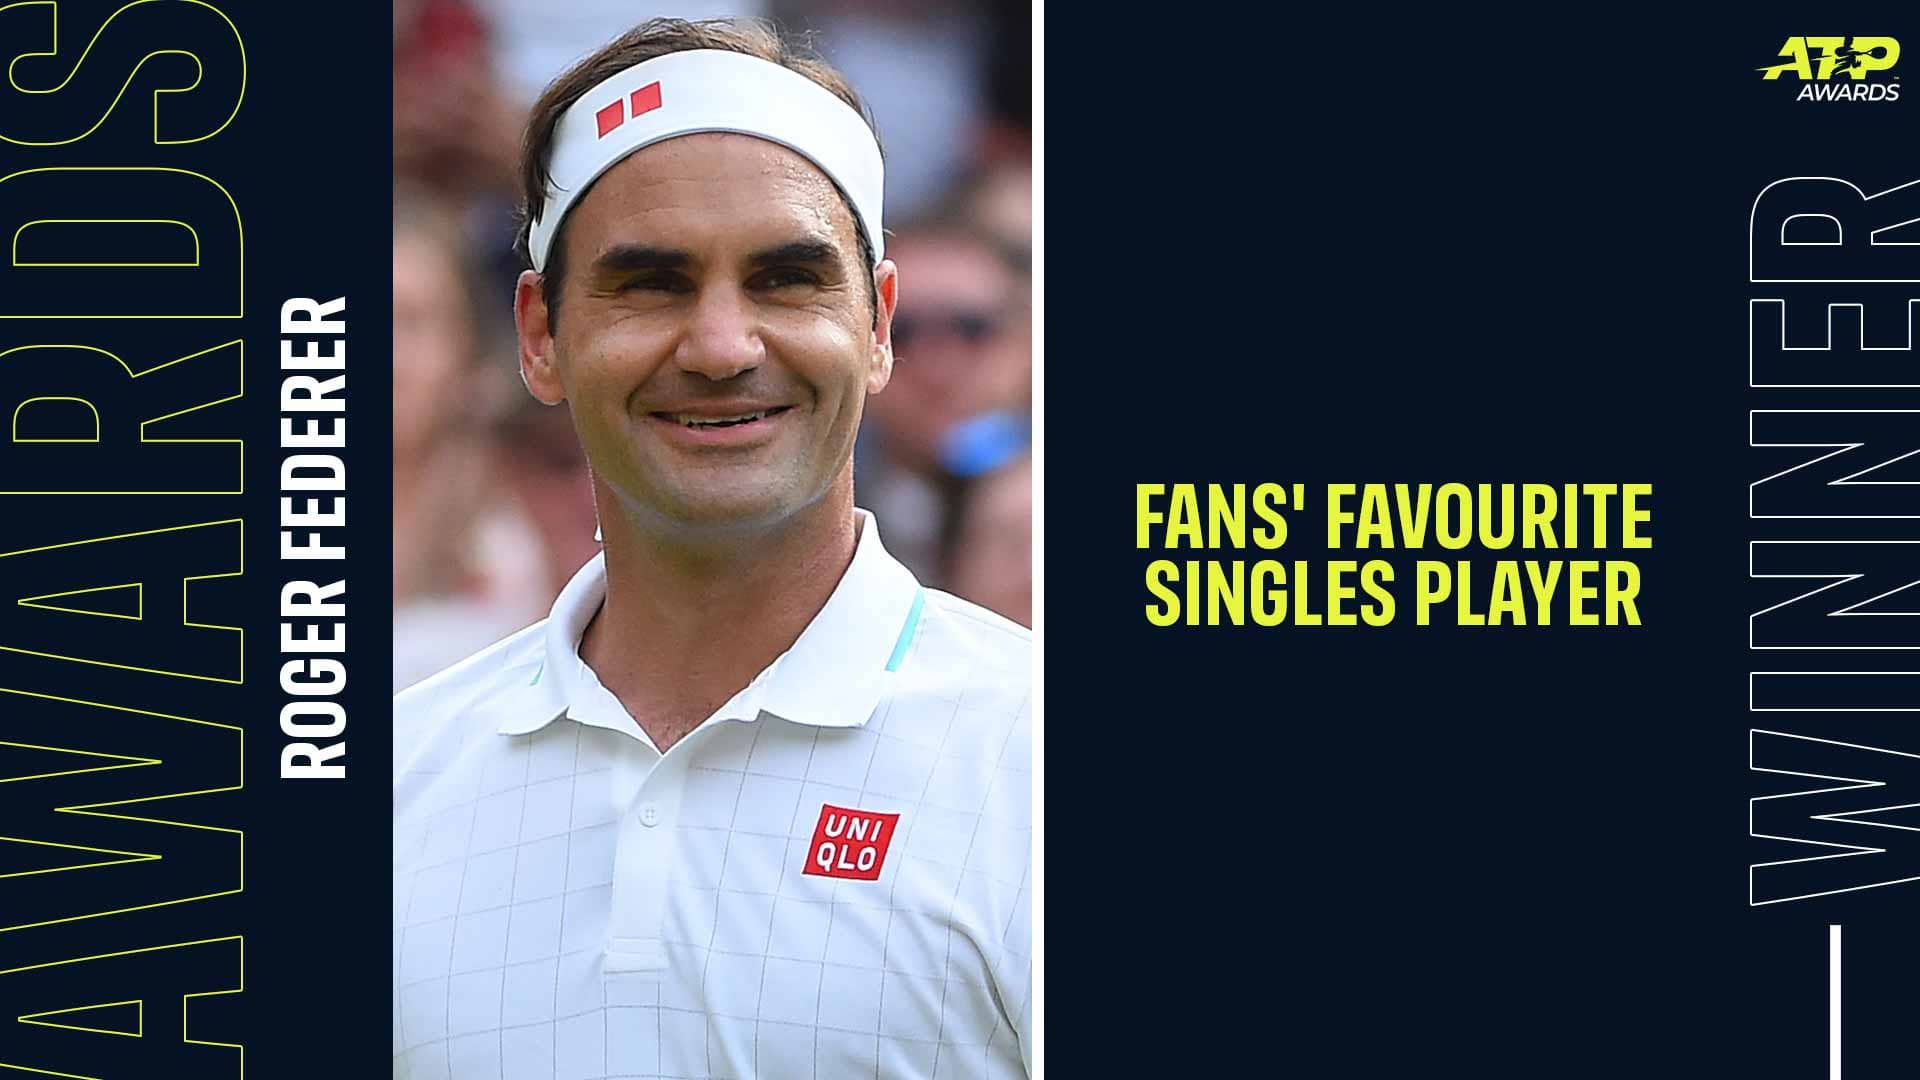 Роджер Федерер в 19-й раз выиграл в голосовании "Фаворит болельщиков" в ATP